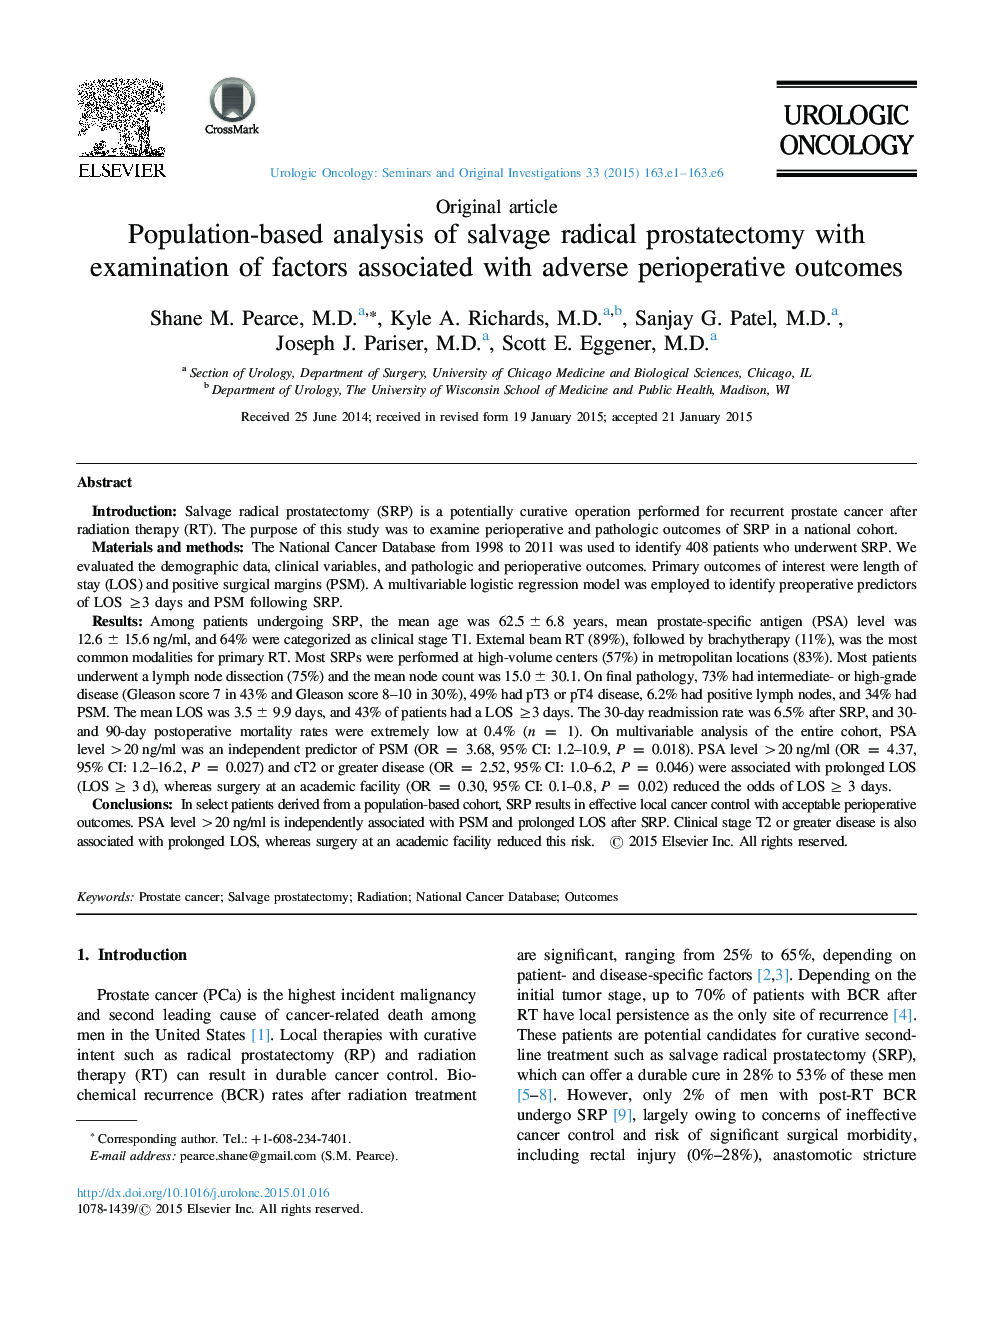 تجزیه و تحلیل جمعیت مبتنی بر پروستاتکتومی رادیکال جراحی با بررسی عوامل مرتبط با نتایج پیش از عمل جراحی 